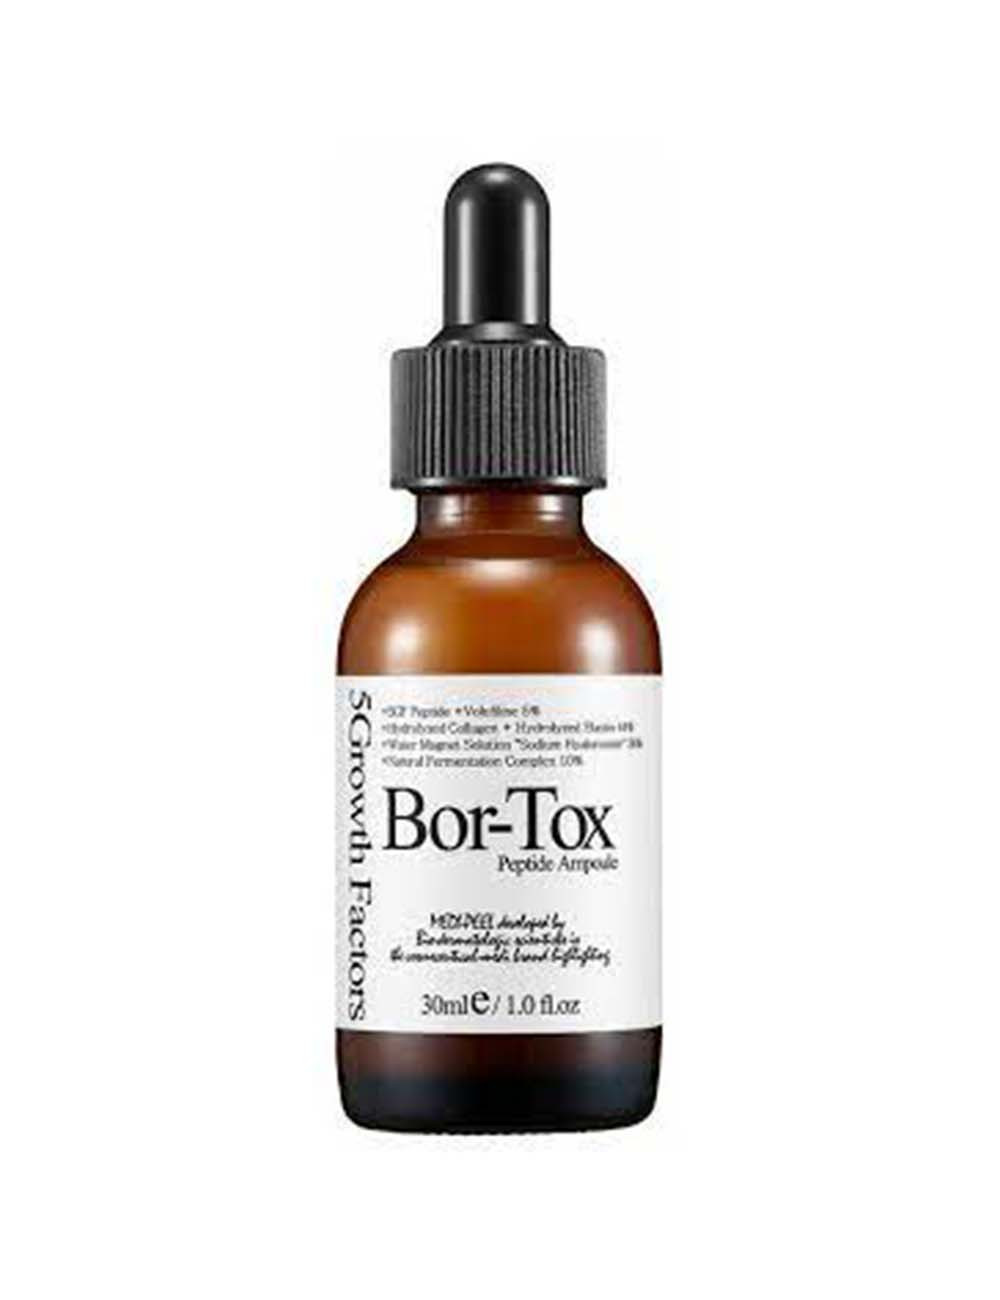 MEDI-PEEL – Bor-Tox Peptide...